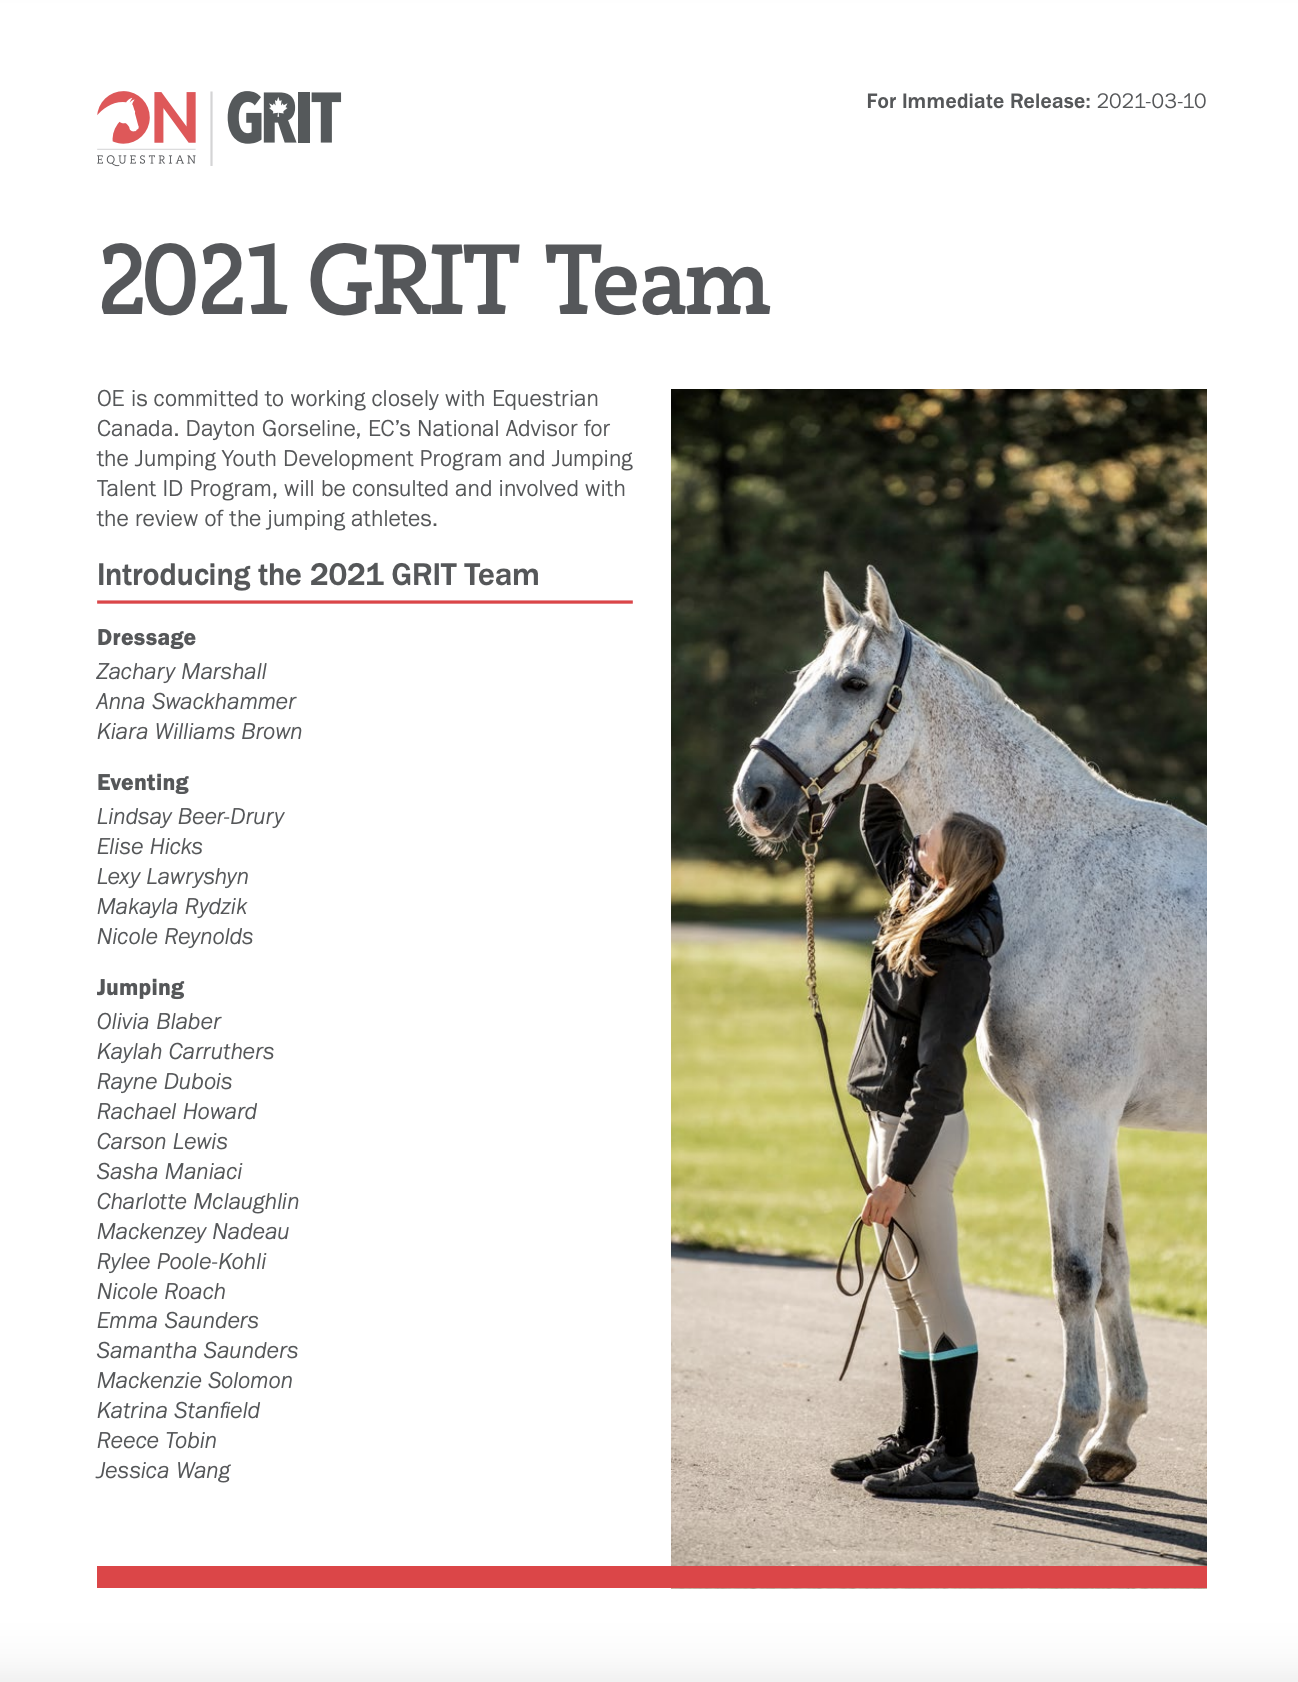 GRIT Press Release 2021